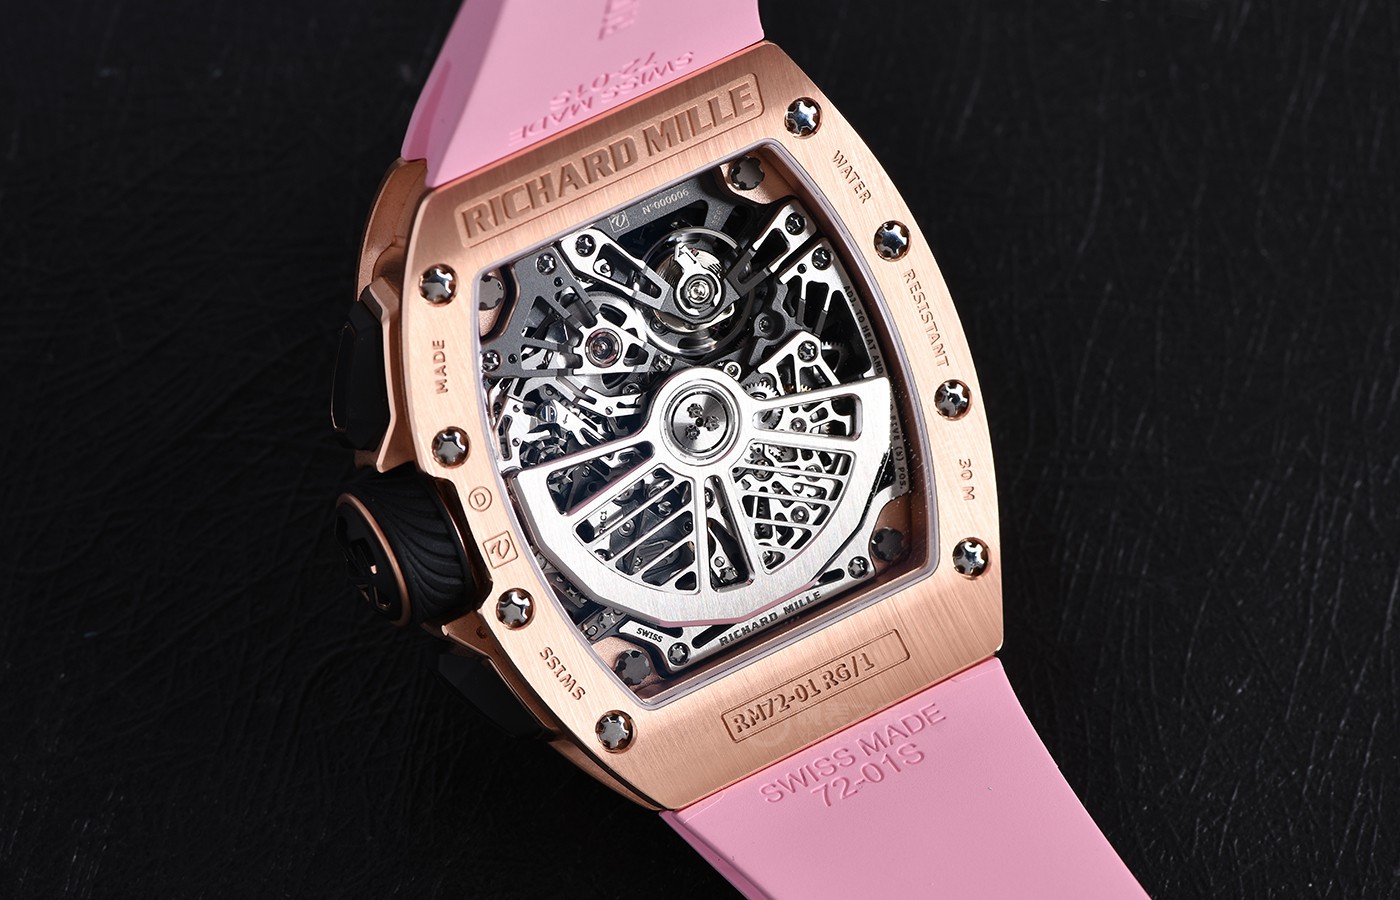 案例式解读里查德米尔RM 72-01计时码表 来自高级腕表的粉色少女心